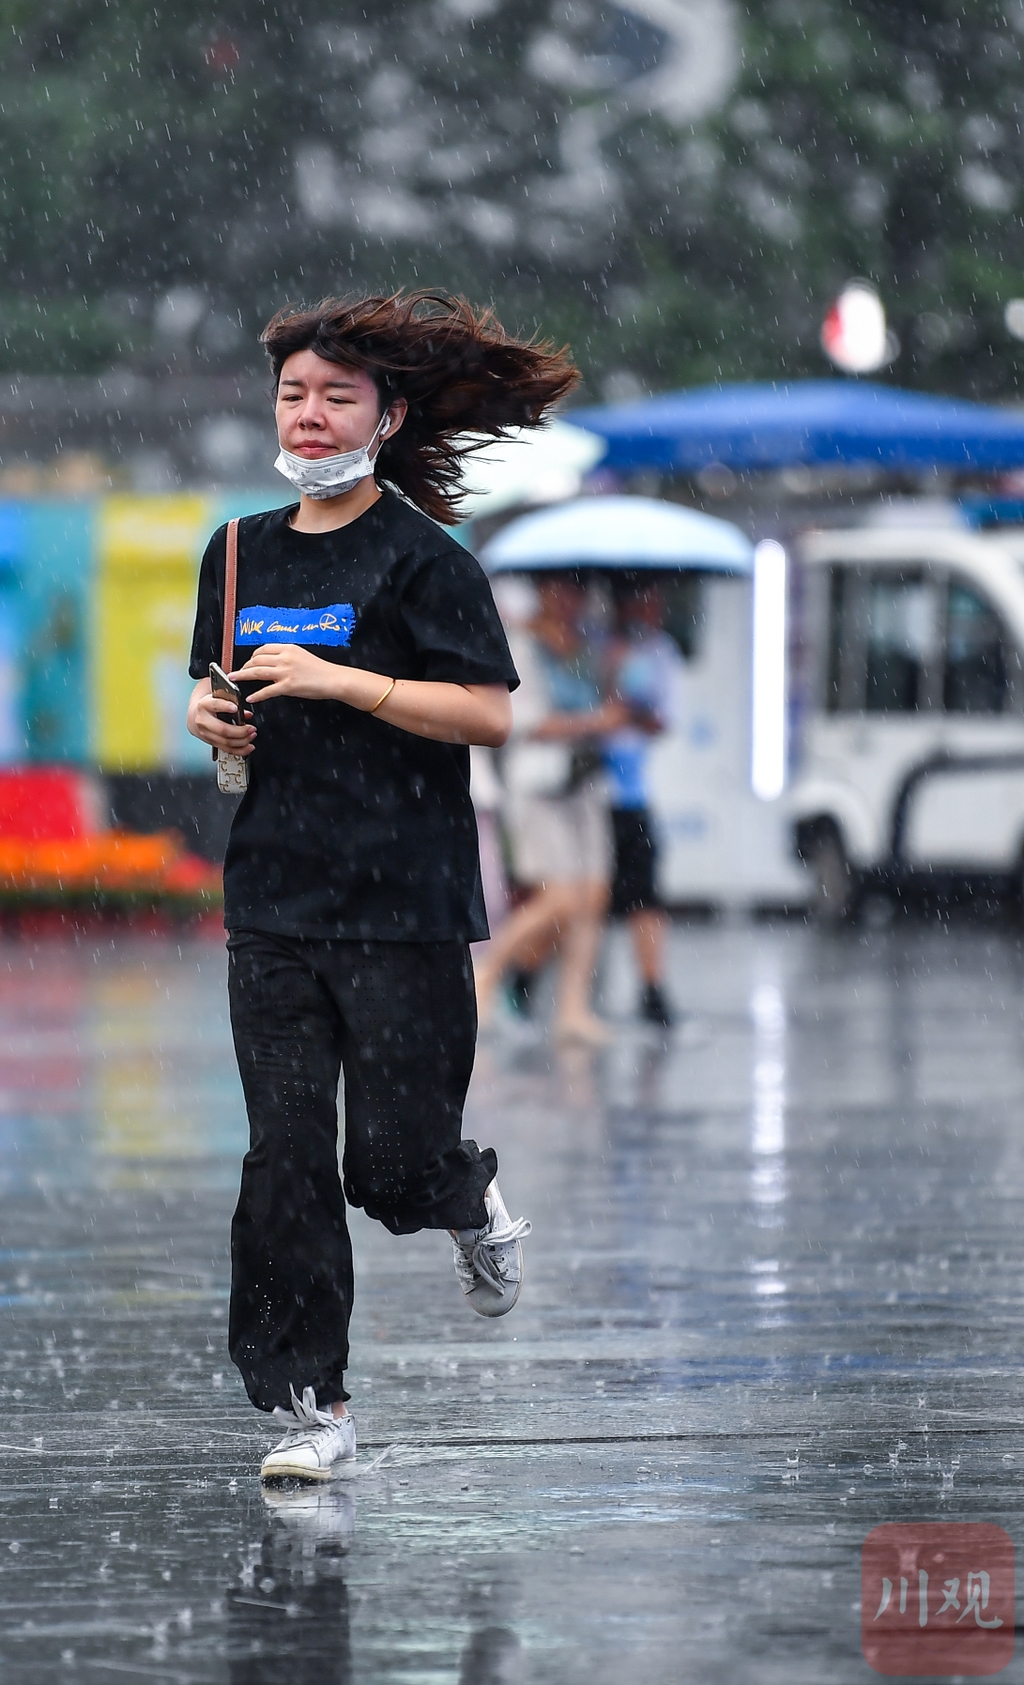 雨中跑步的图片唯美图片